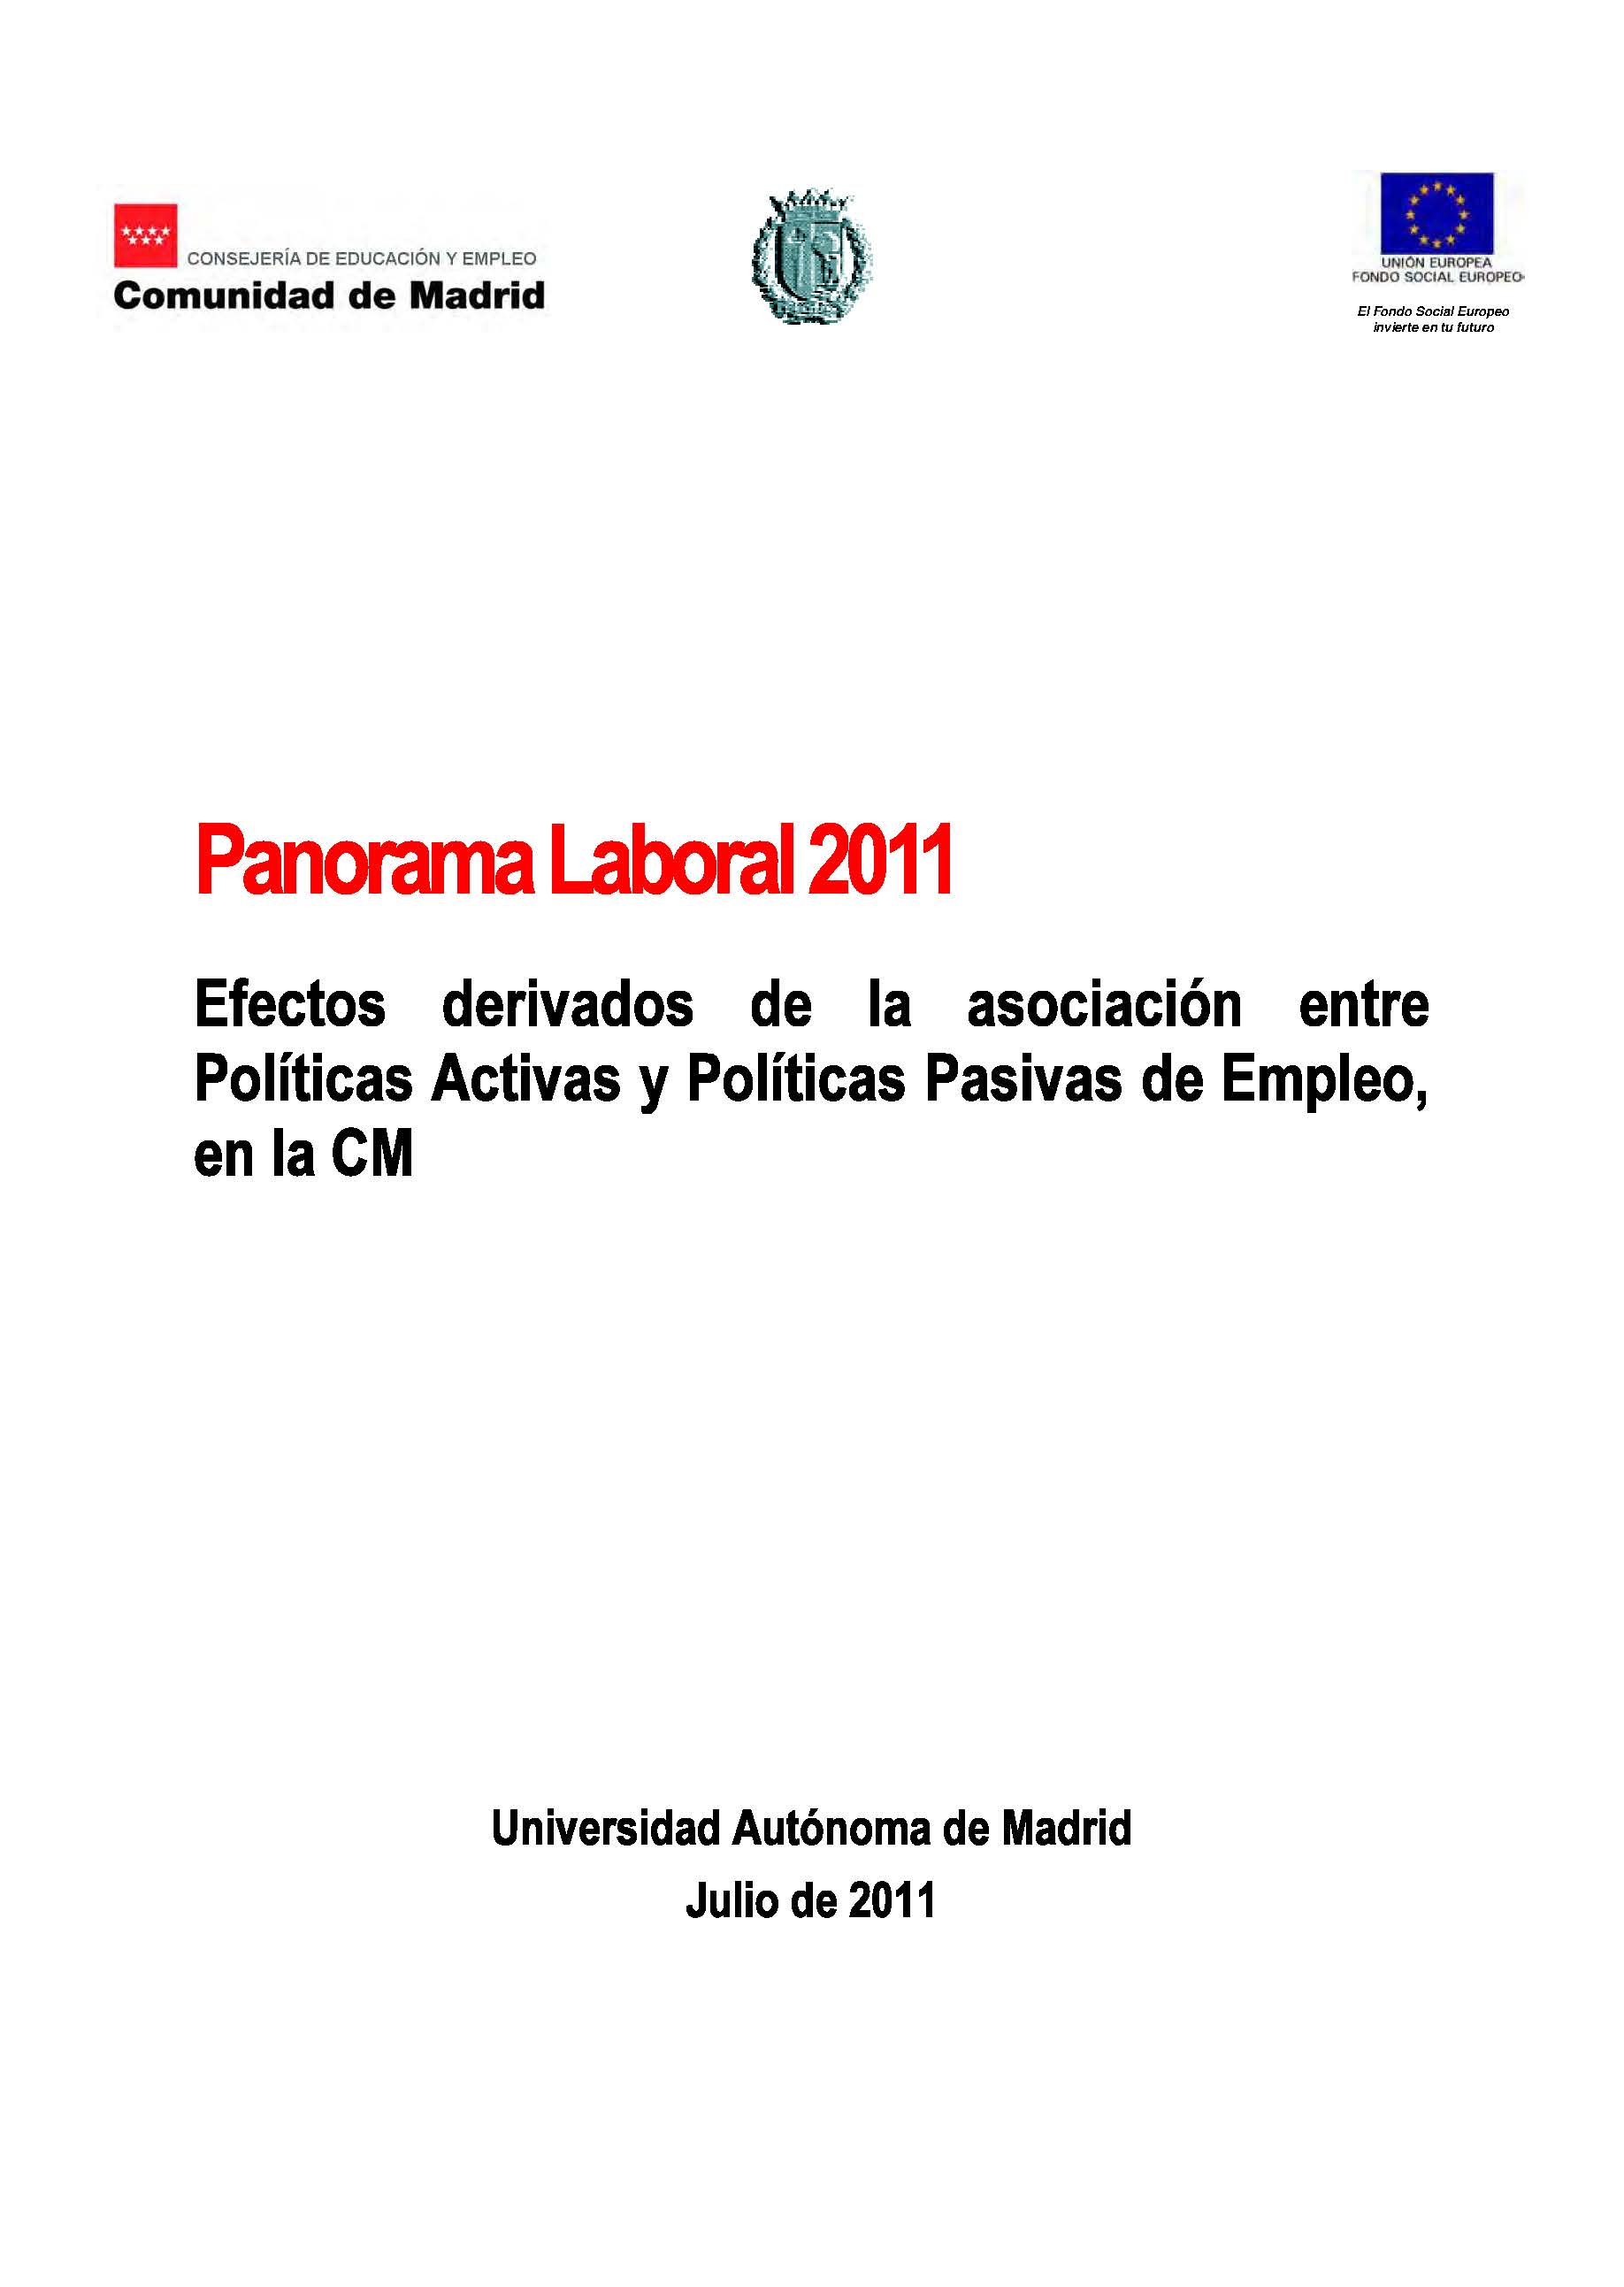 Portada de Panorama Laboral 2011. Efectos derivados de la asociación entre políticas activas y políticas pasivas de empleo en la Comunidad de Madrid